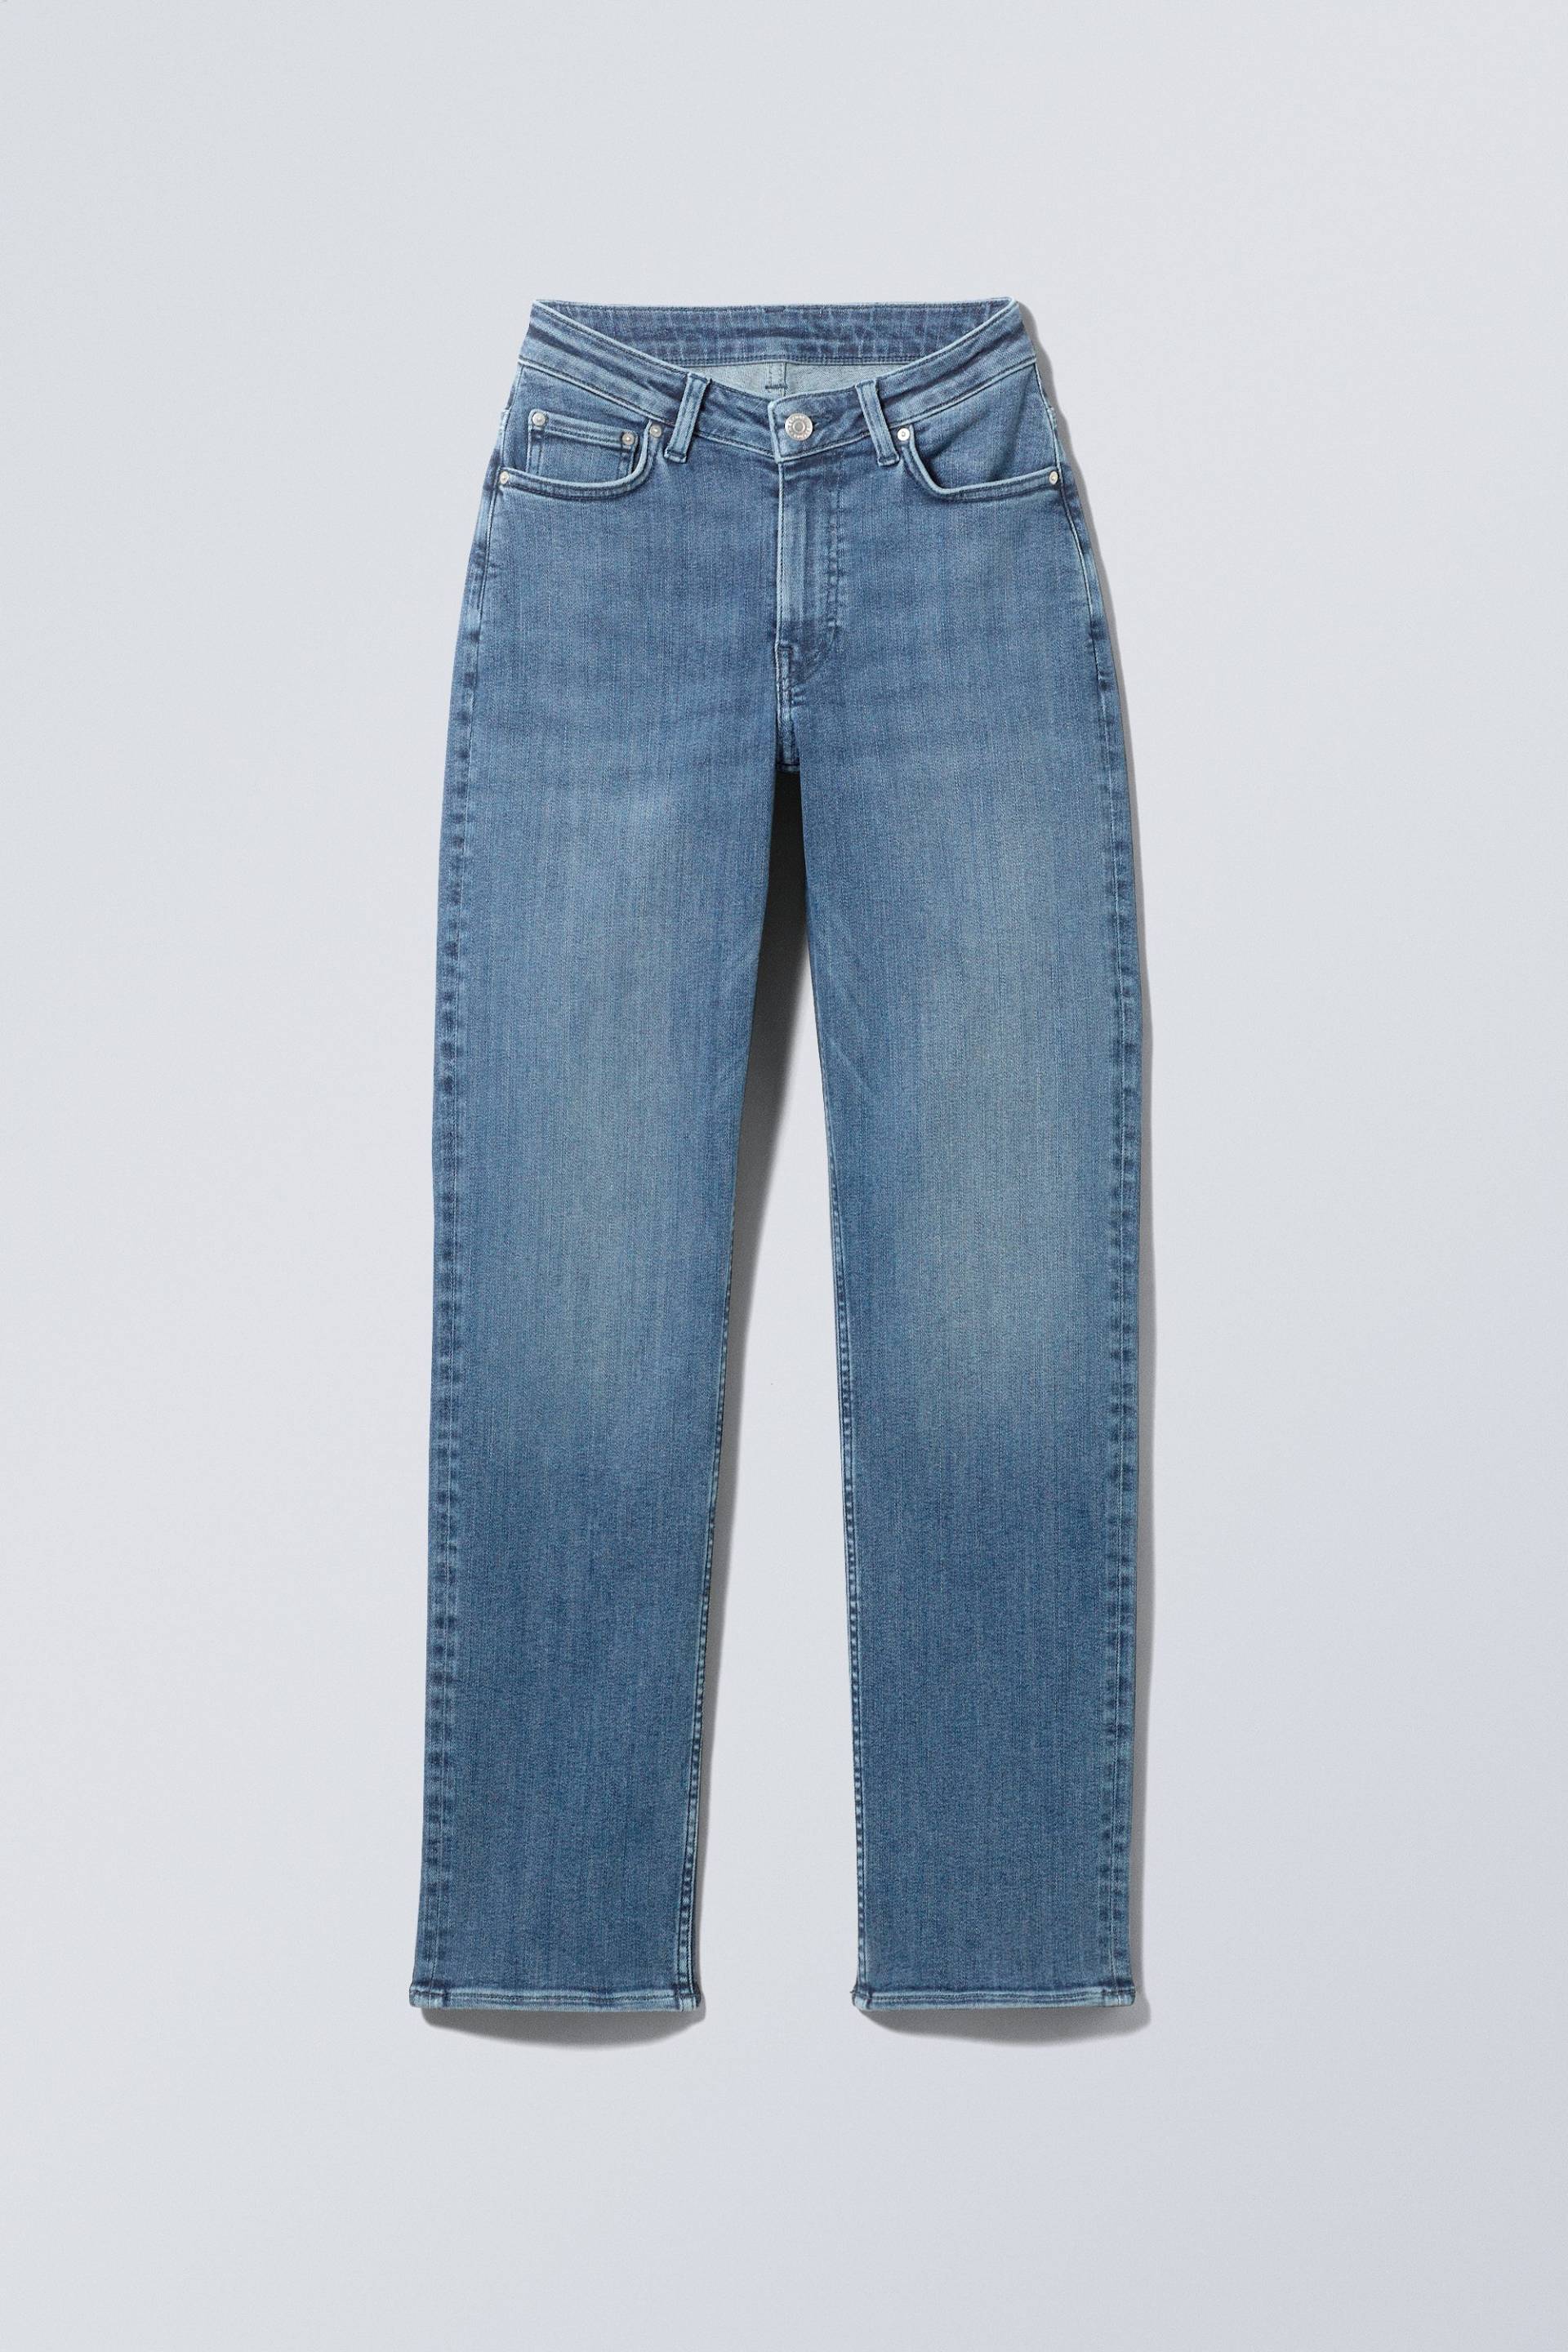 Weekday Twig Curve Jeans mit mittelhohem Bund und geradem Bein Blaulila, Straight in Größe 23/32. Farbe: Deep blue von Weekday